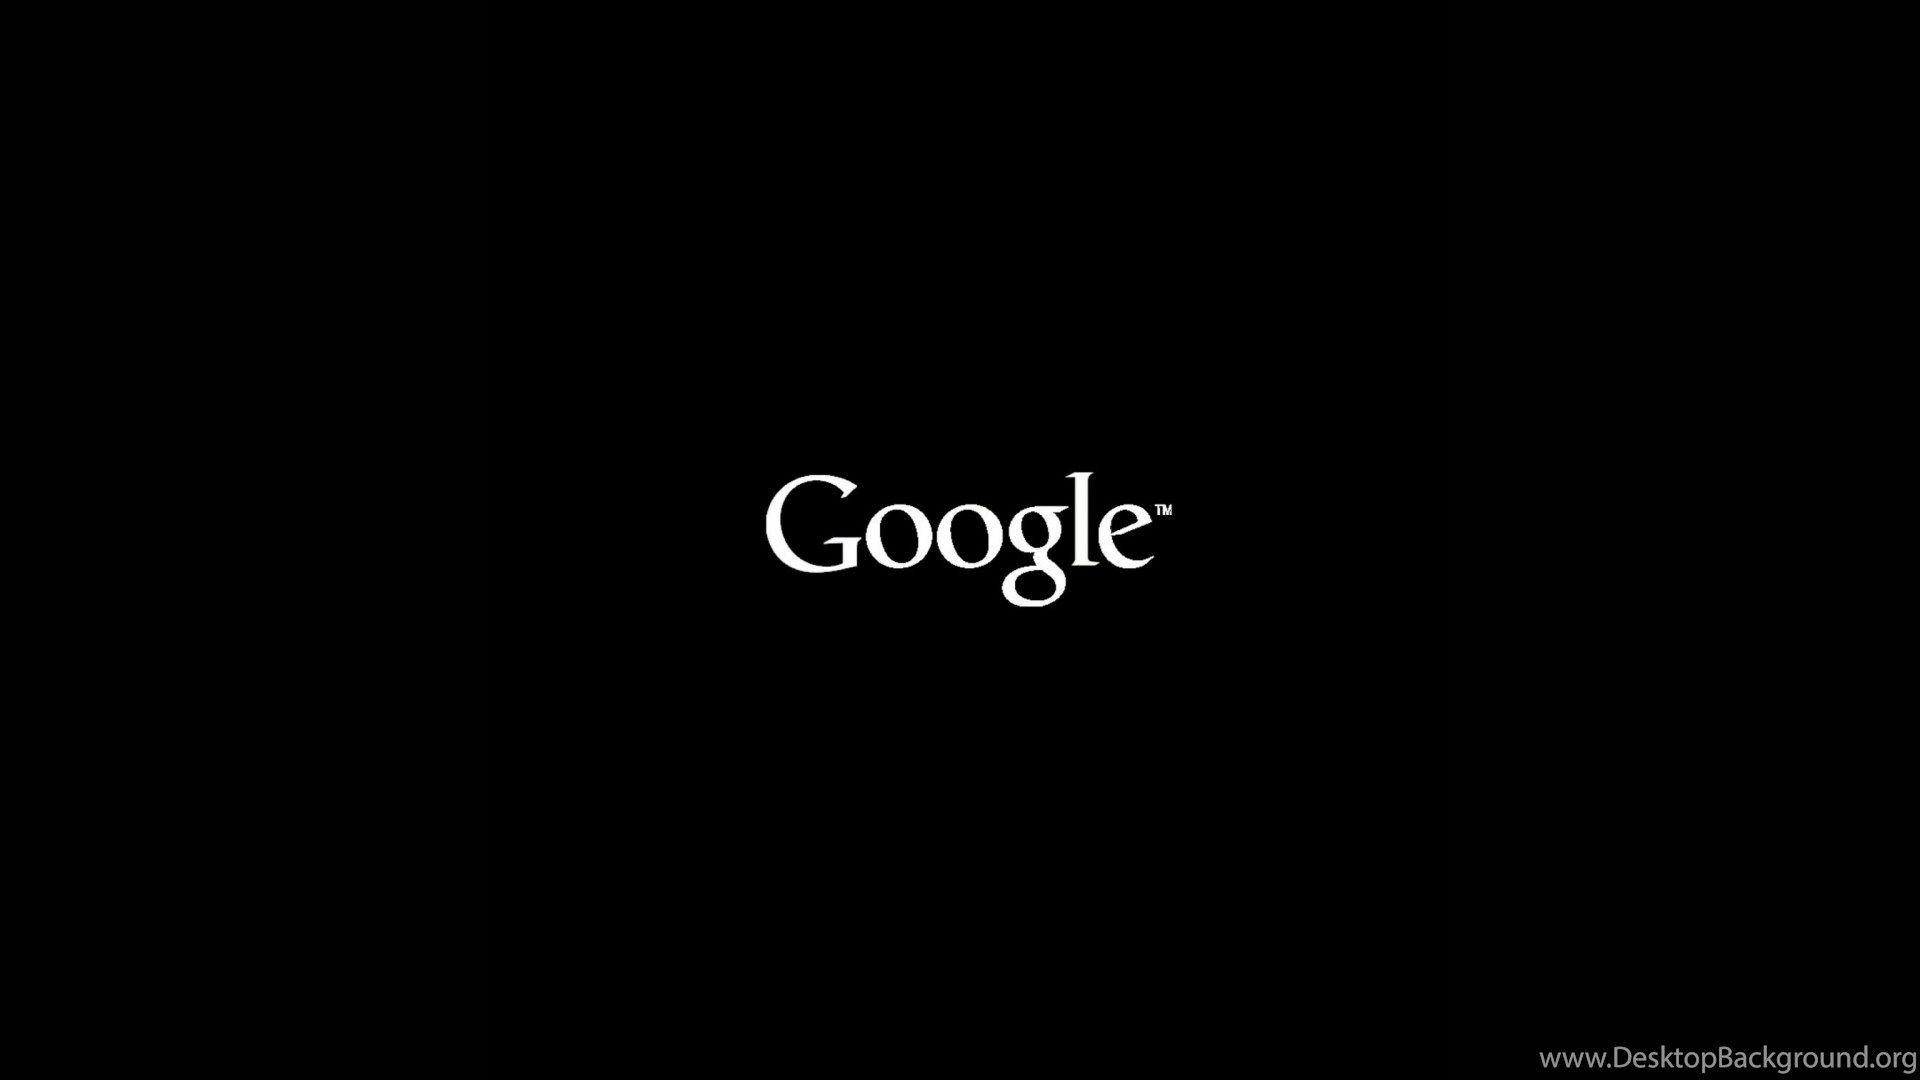 Logo Google đen - Black Google logo: Bạn đã bao giờ tò mò về phiên bản Google logo màu đen chưa? Hãy thưởng thức ngay ảnh chụp màn hình của chúng tôi để khám phá phiên bản độc đáo này. Bạn sẽ không thể bỏ qua nó.